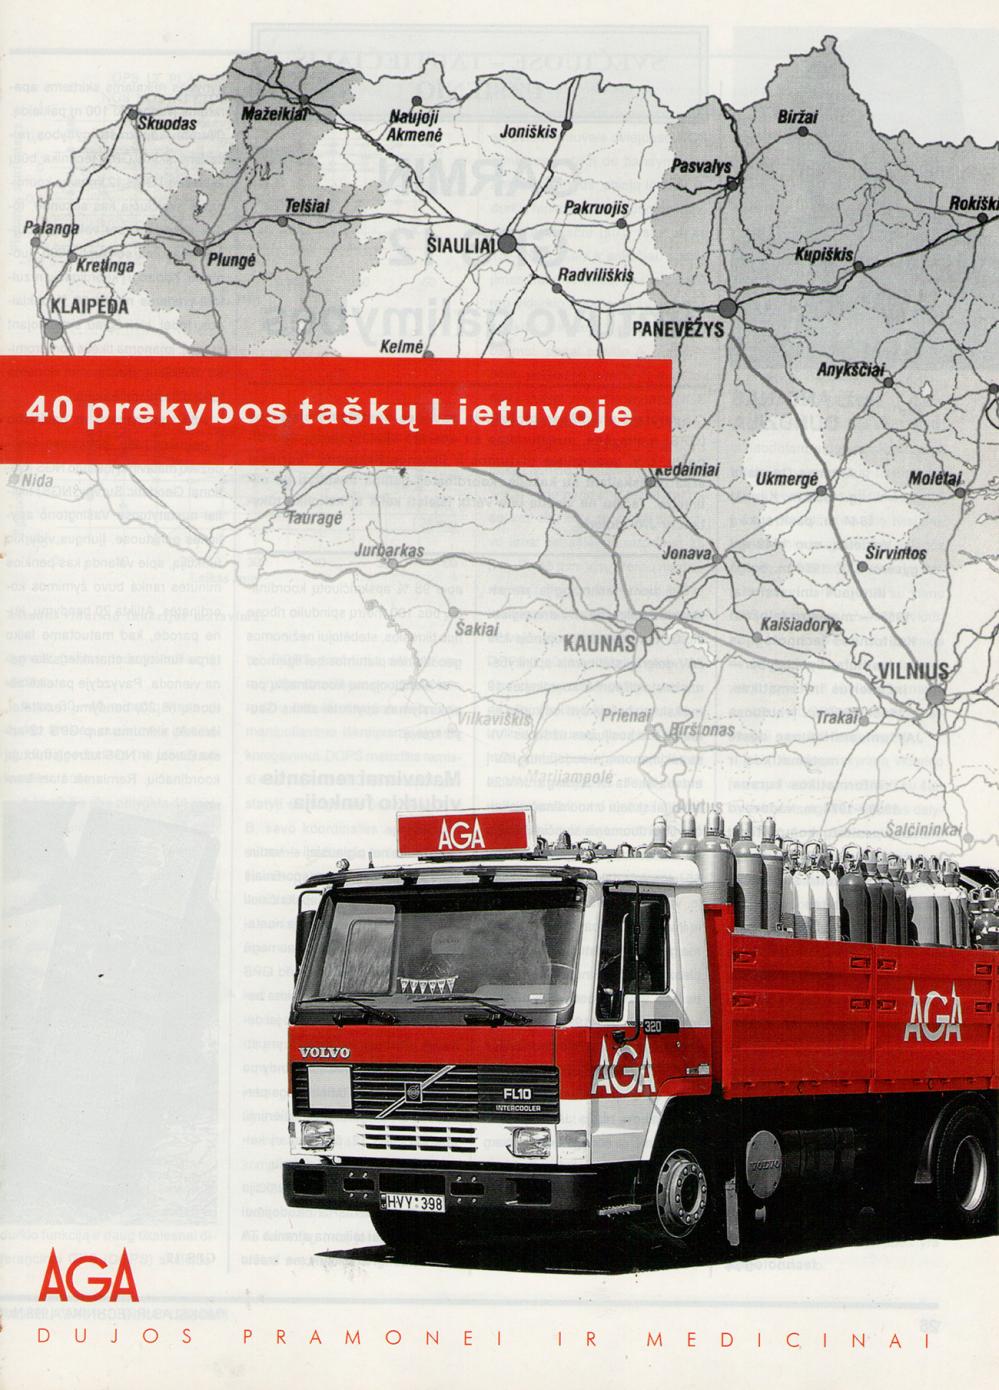 Dujos pramonei ir medicinai / AGA / 40 prekybos taškų Lietuvoje